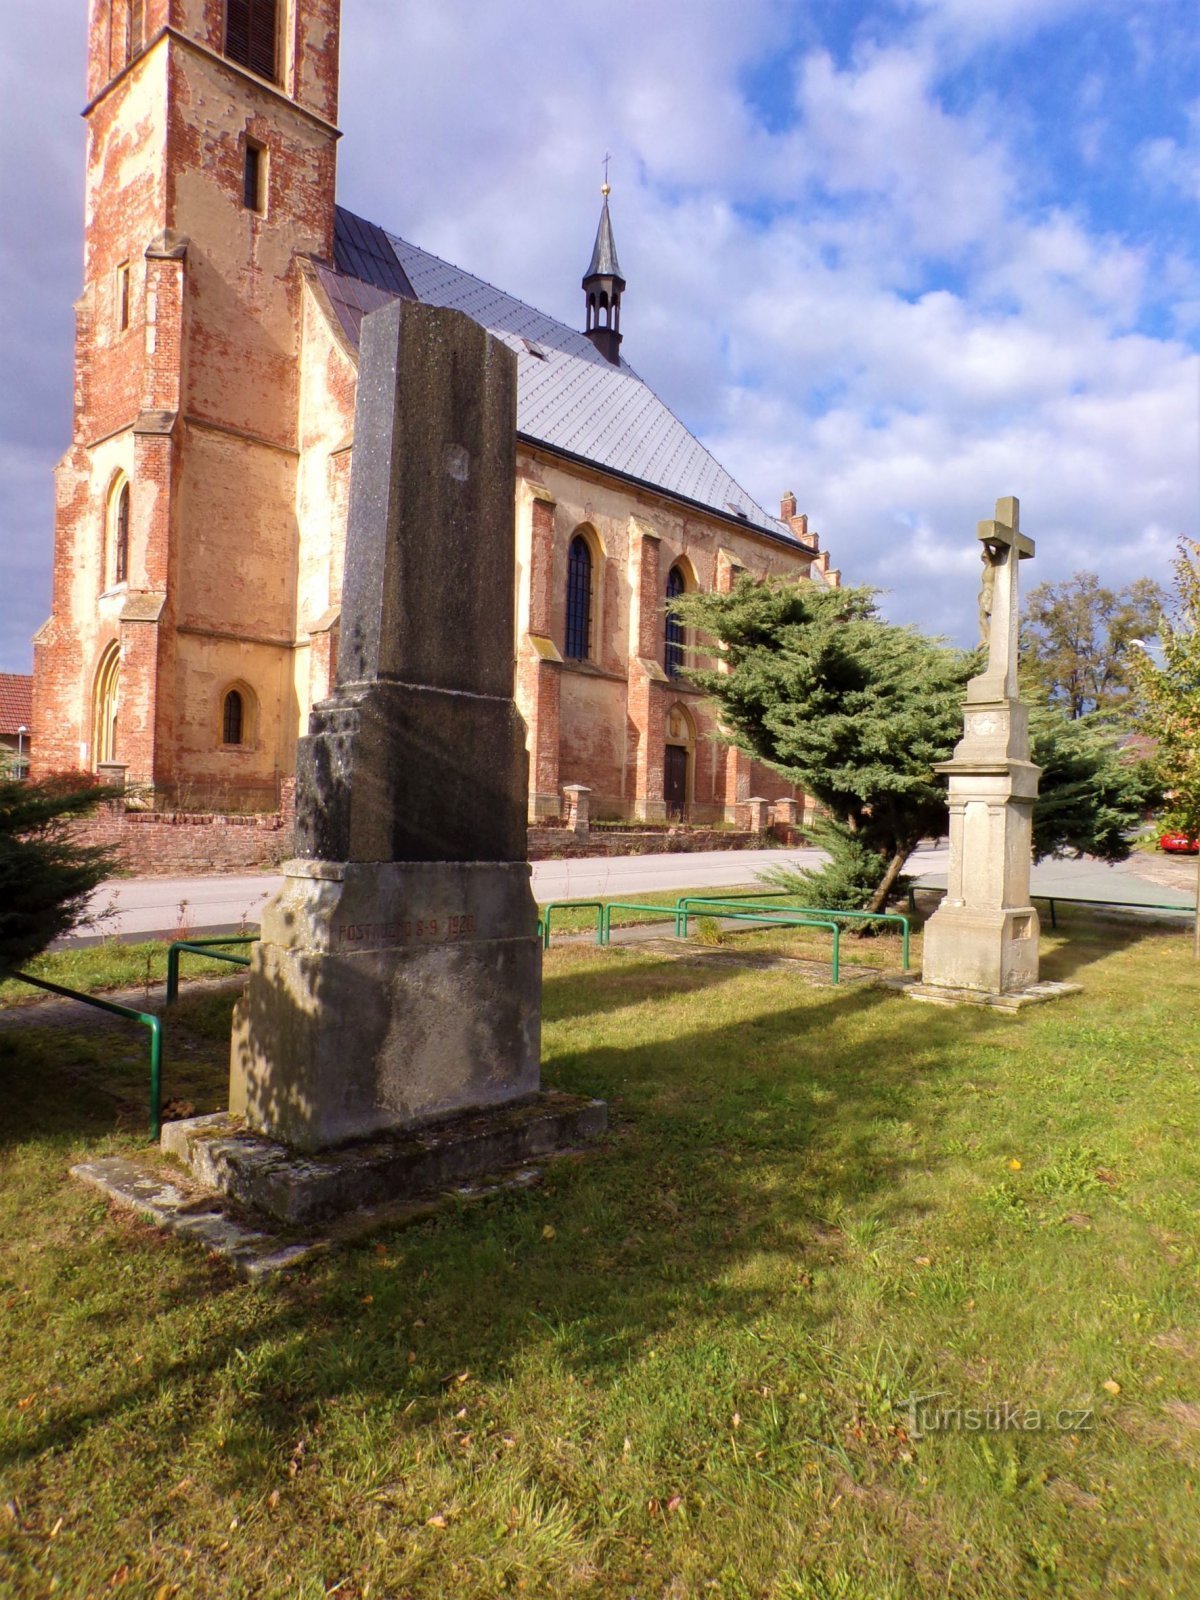 第一次世界大戦で亡くなった人々の記念碑と十字架 (Suchá, 1/16.10.2021/XNUMX)